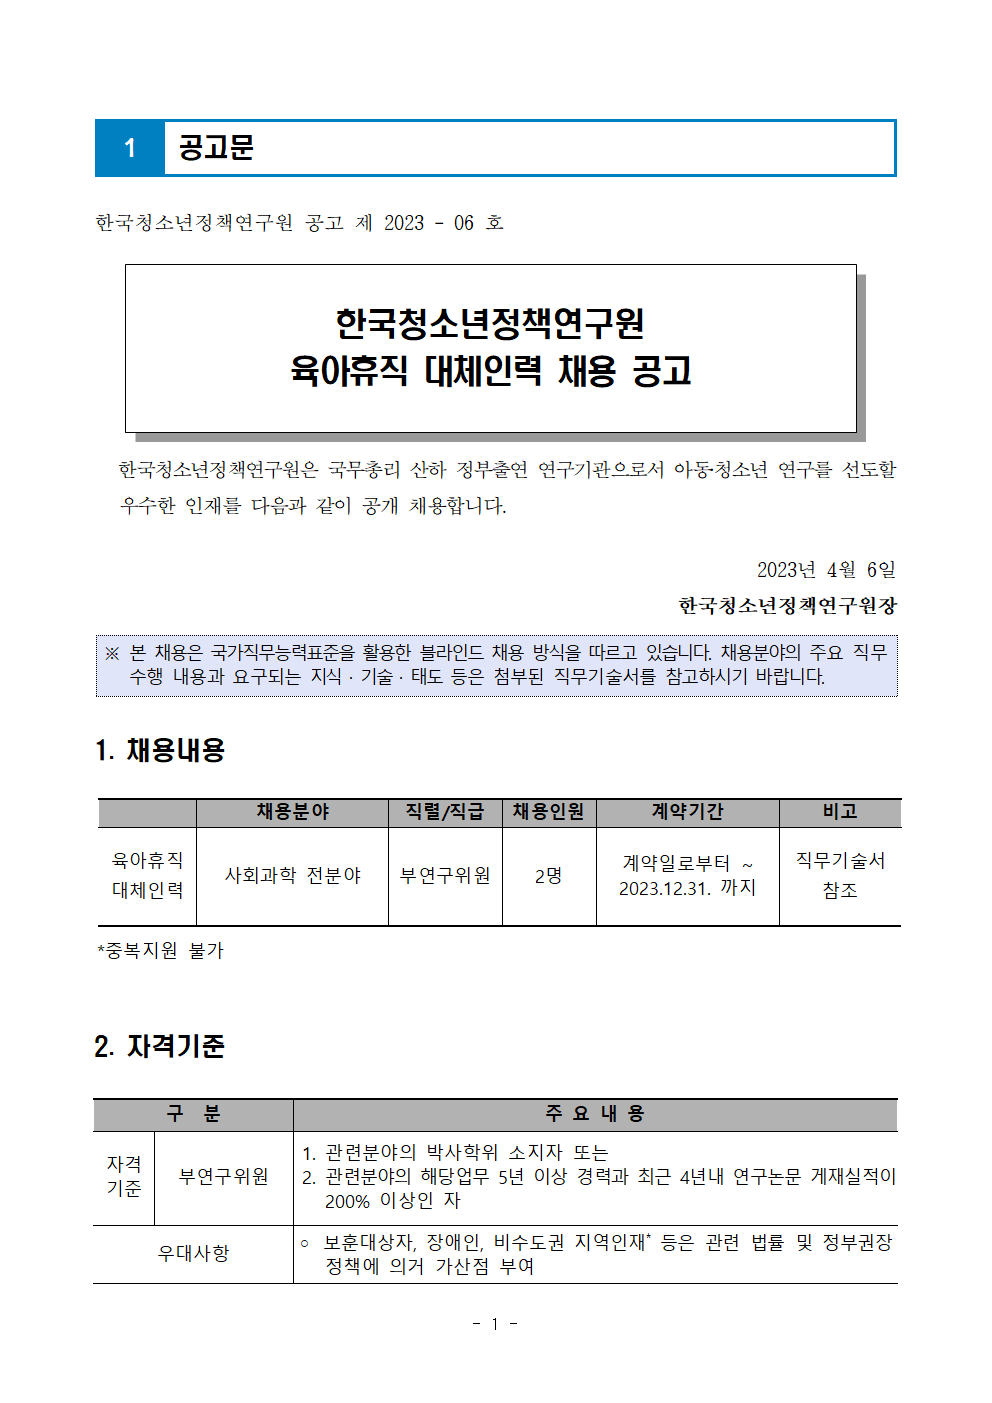 (1/5) [한국청소년정책연구원] 육아휴직 대체인력 채용 공고문 - 자세한 내용은 하단 참조